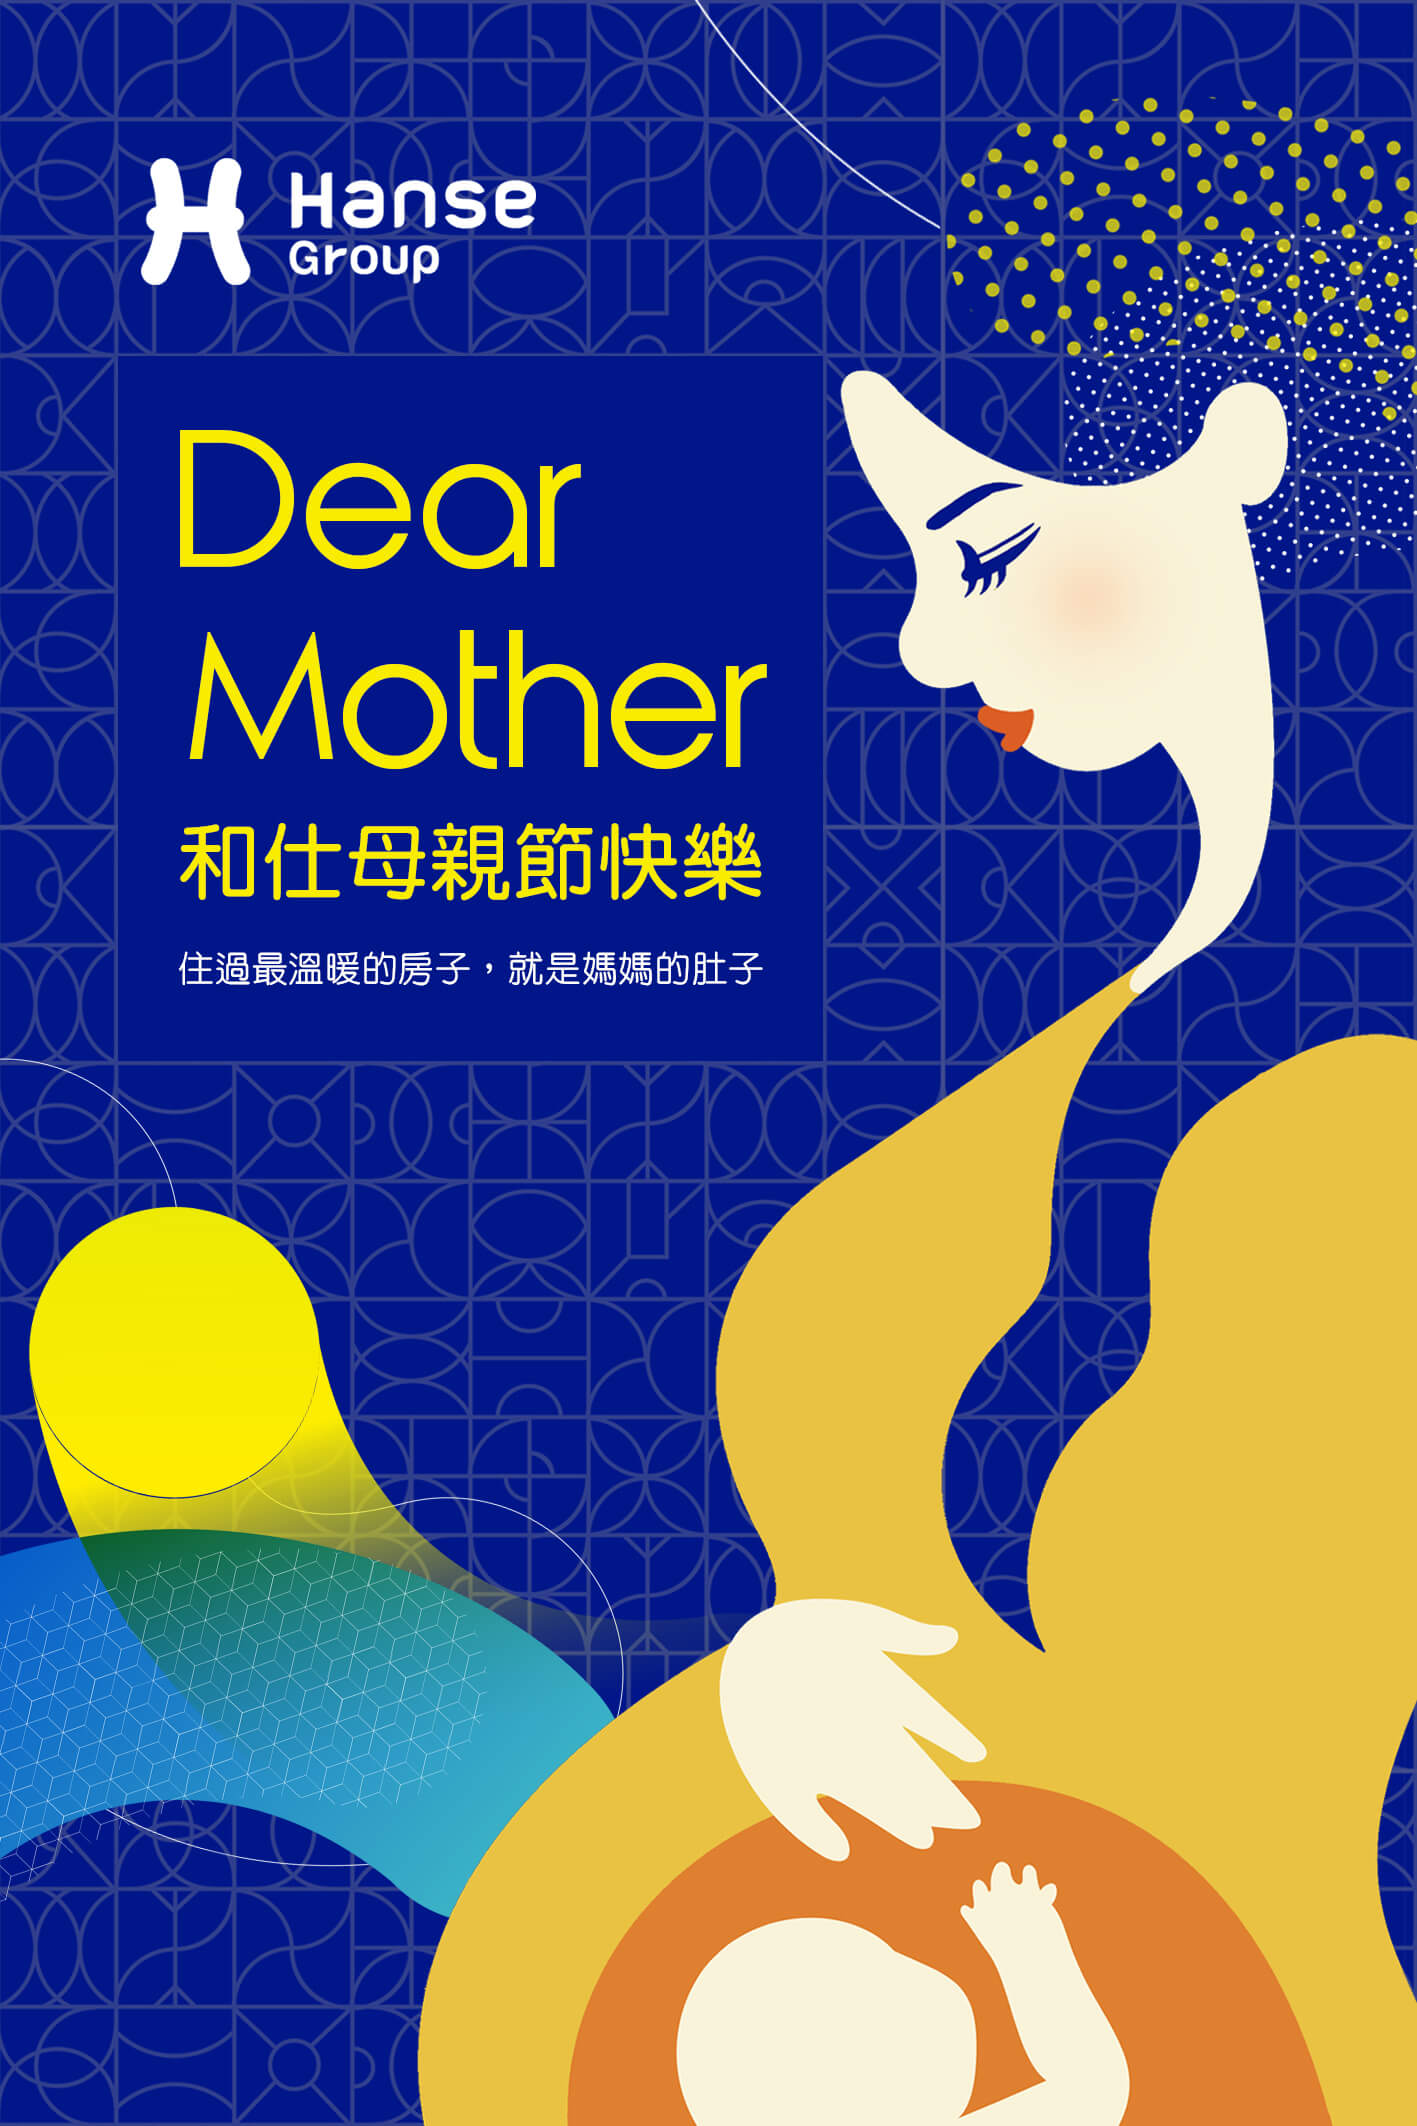 Dear Mother 和仕母親節快樂_最新消息_和仕集團02